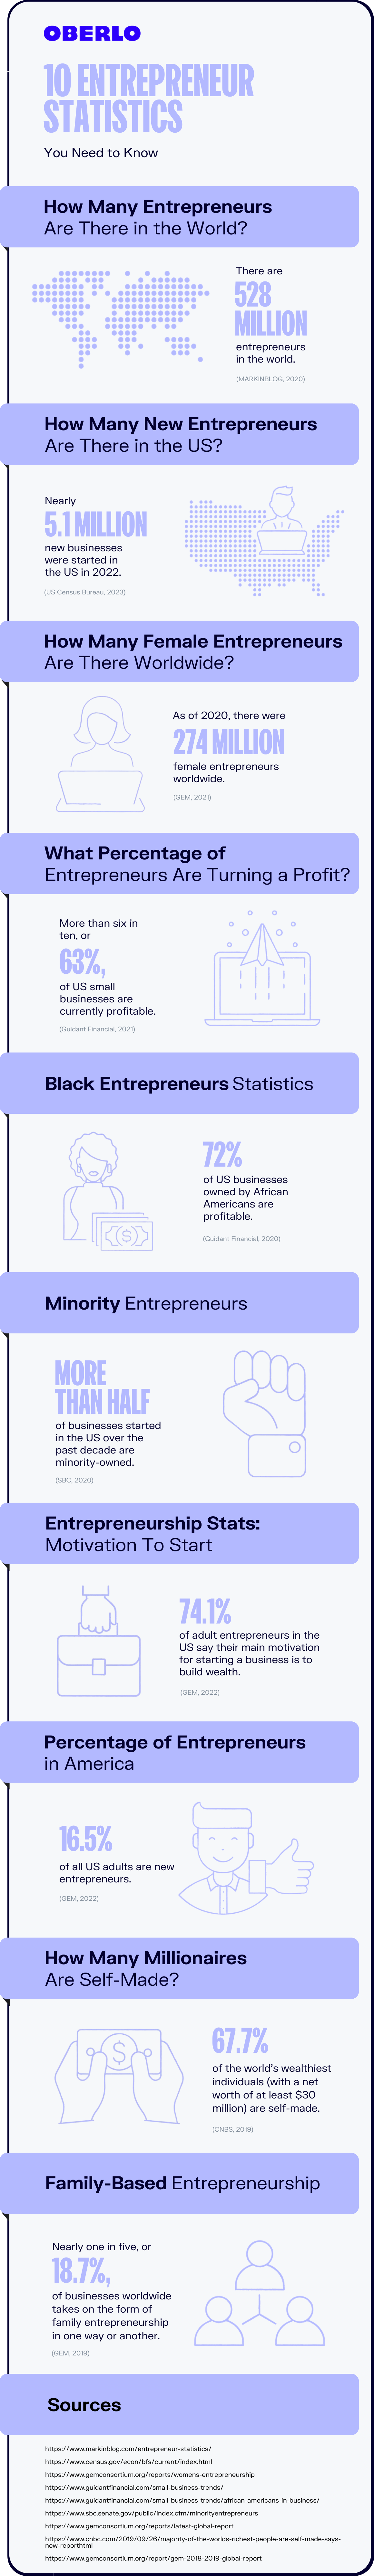 entrepreneur statistics full infographic